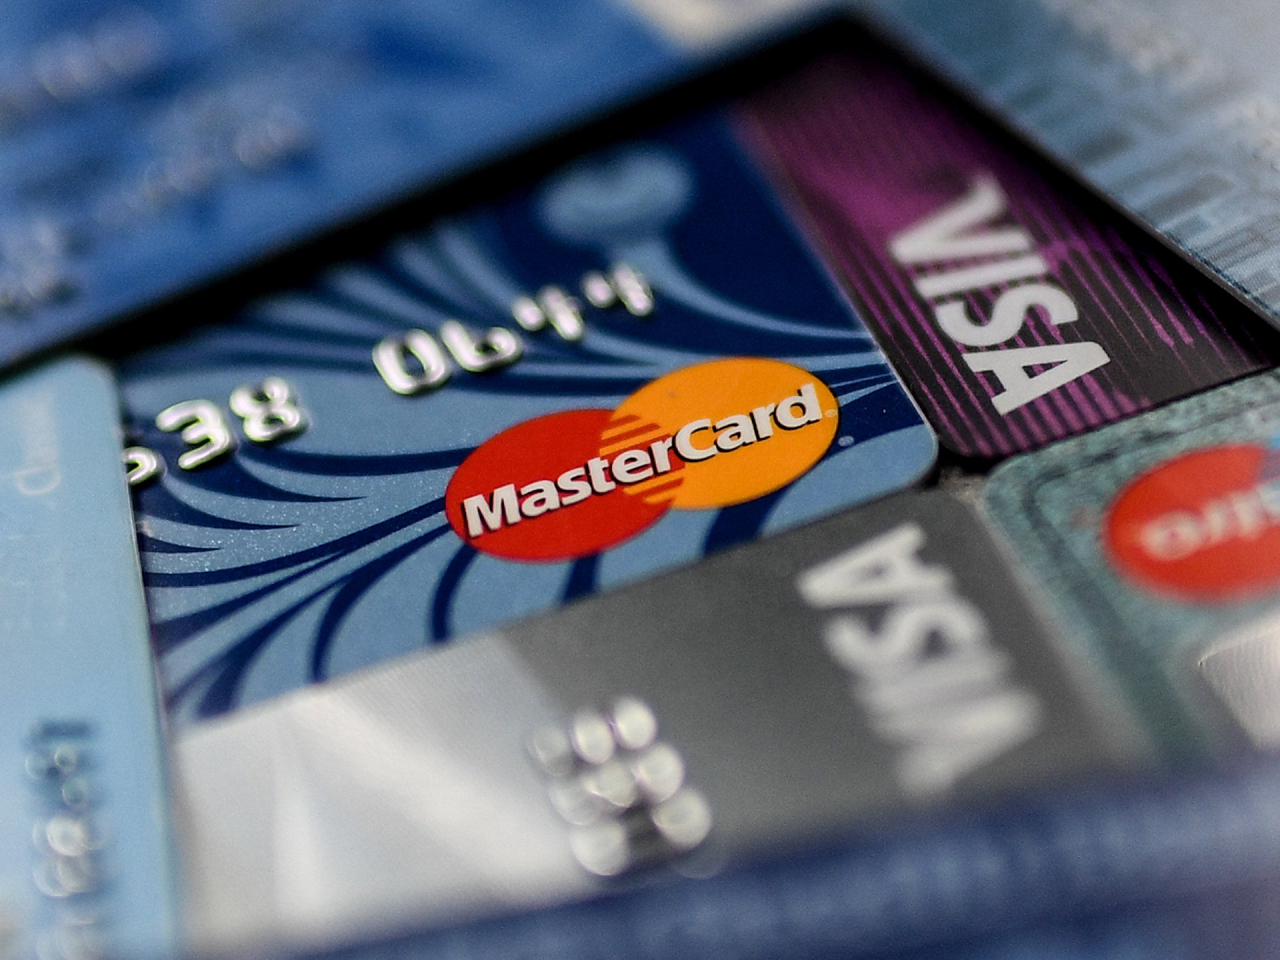 Visa и Mastercard уходят с российского рынка. Что делать?